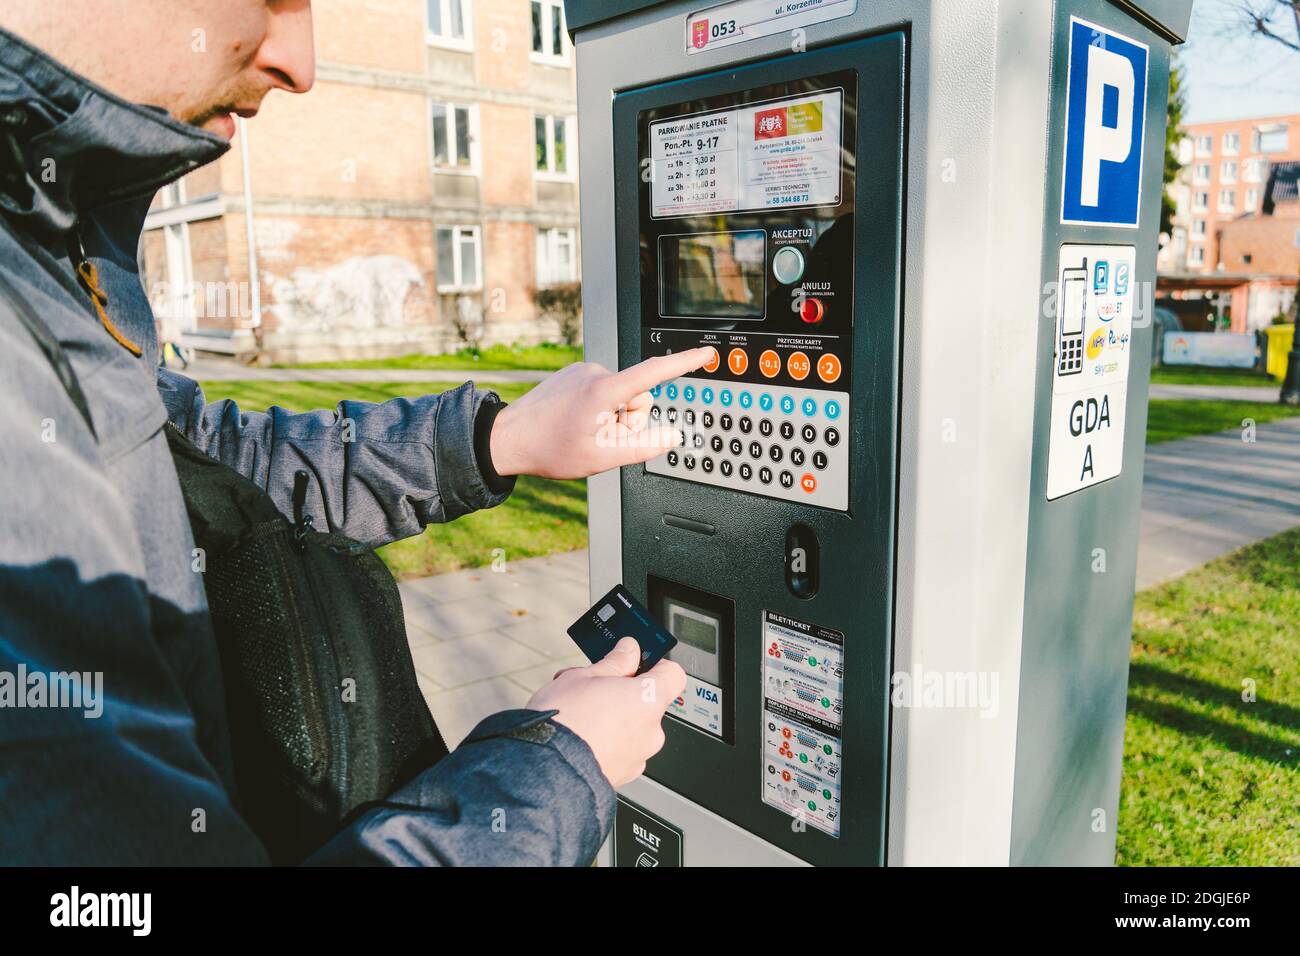 El hombre paga por el aparcamiento con una tarjeta de crédito con tecnología NFS. Pago fácil. Proceso de pago en terminal de estacionamiento de máquinas. Hombres de pago Foto de stock